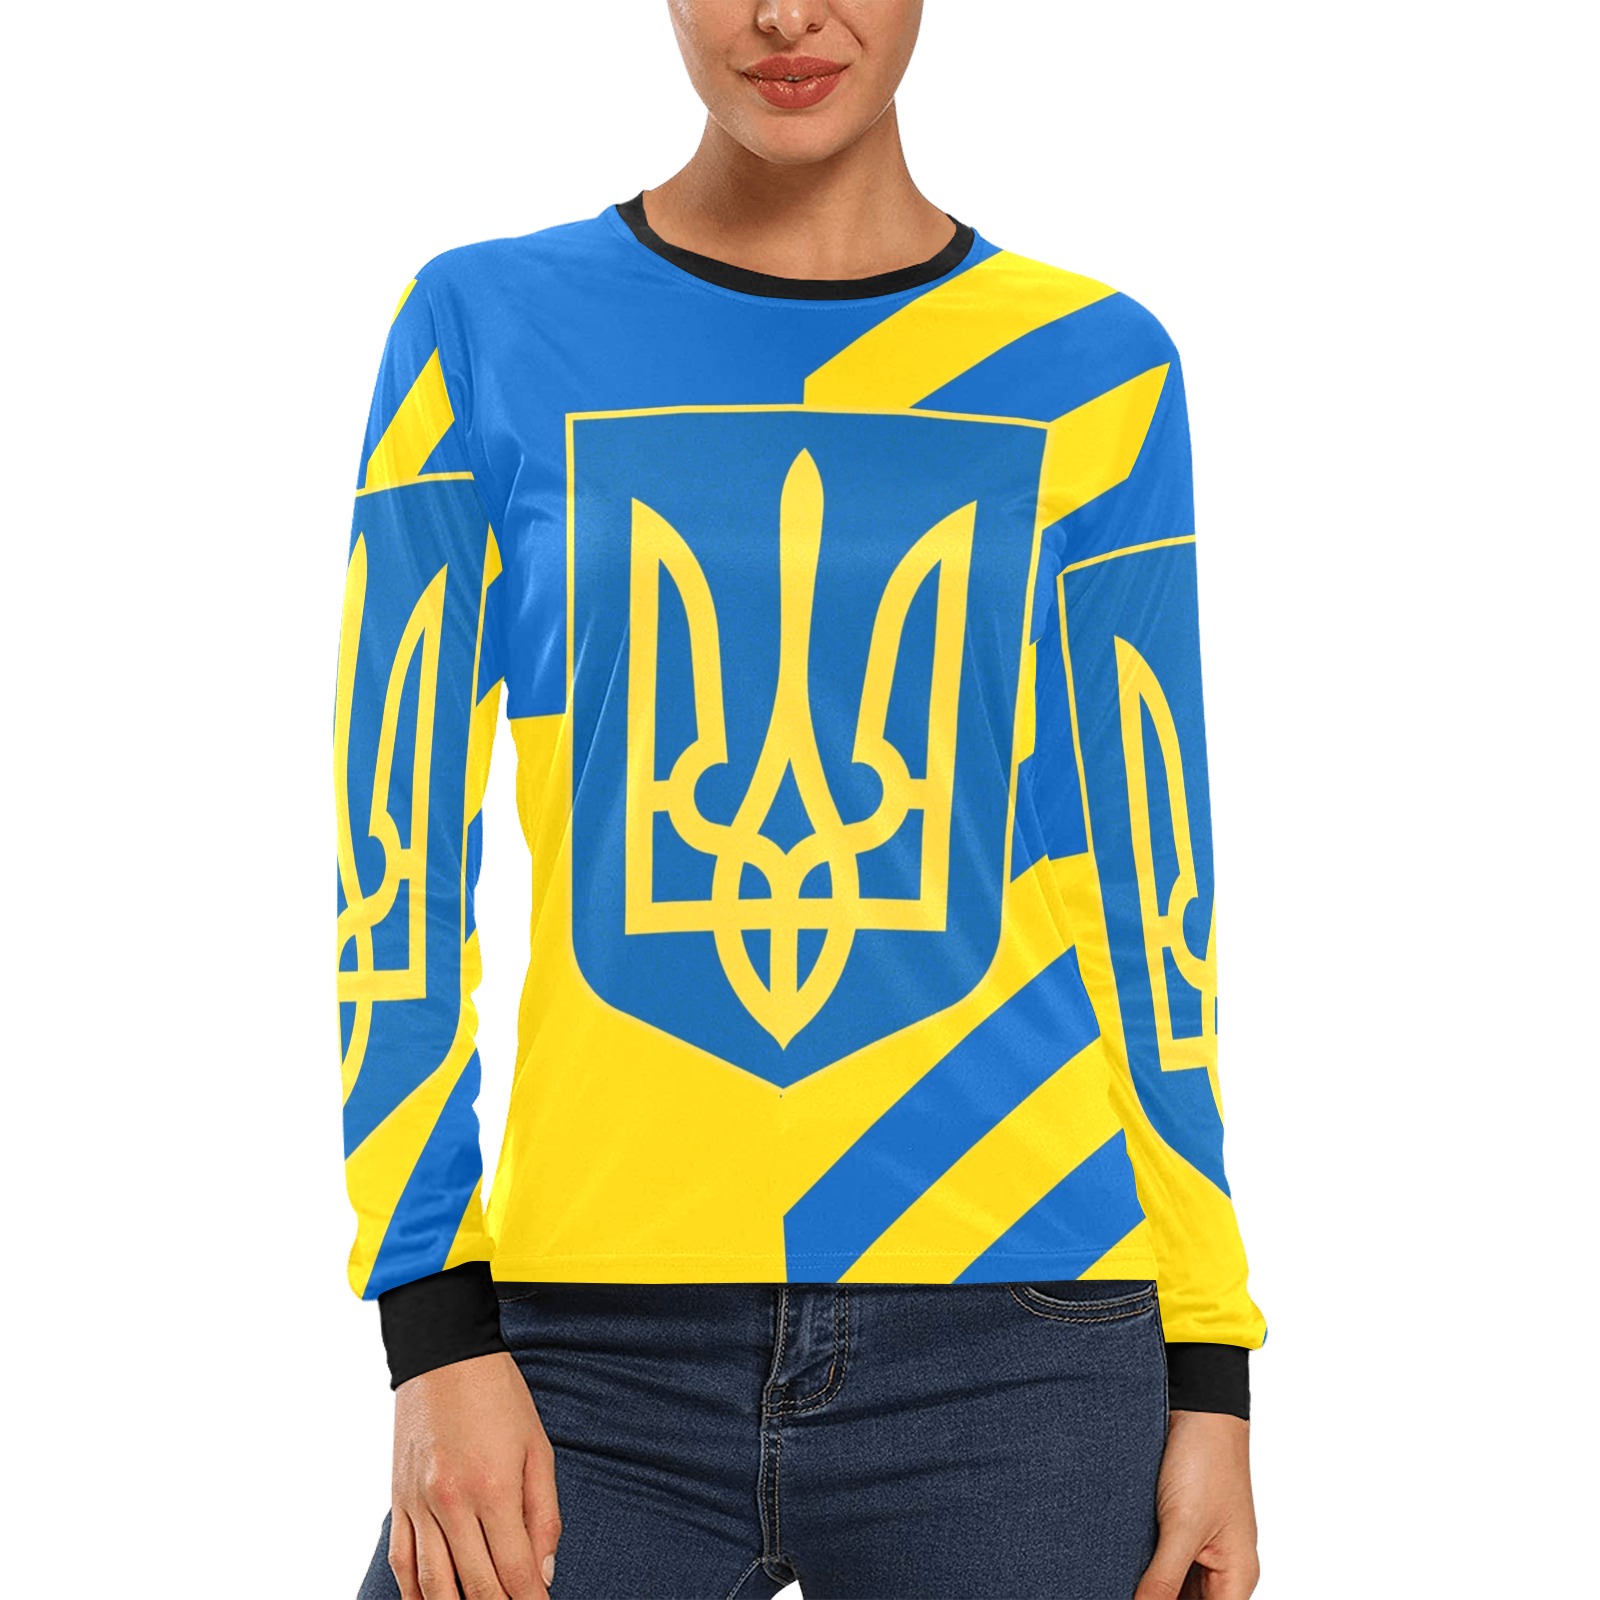 UKRAINE Women's All Over Print Long Sleeve T-shirt (Model T51)